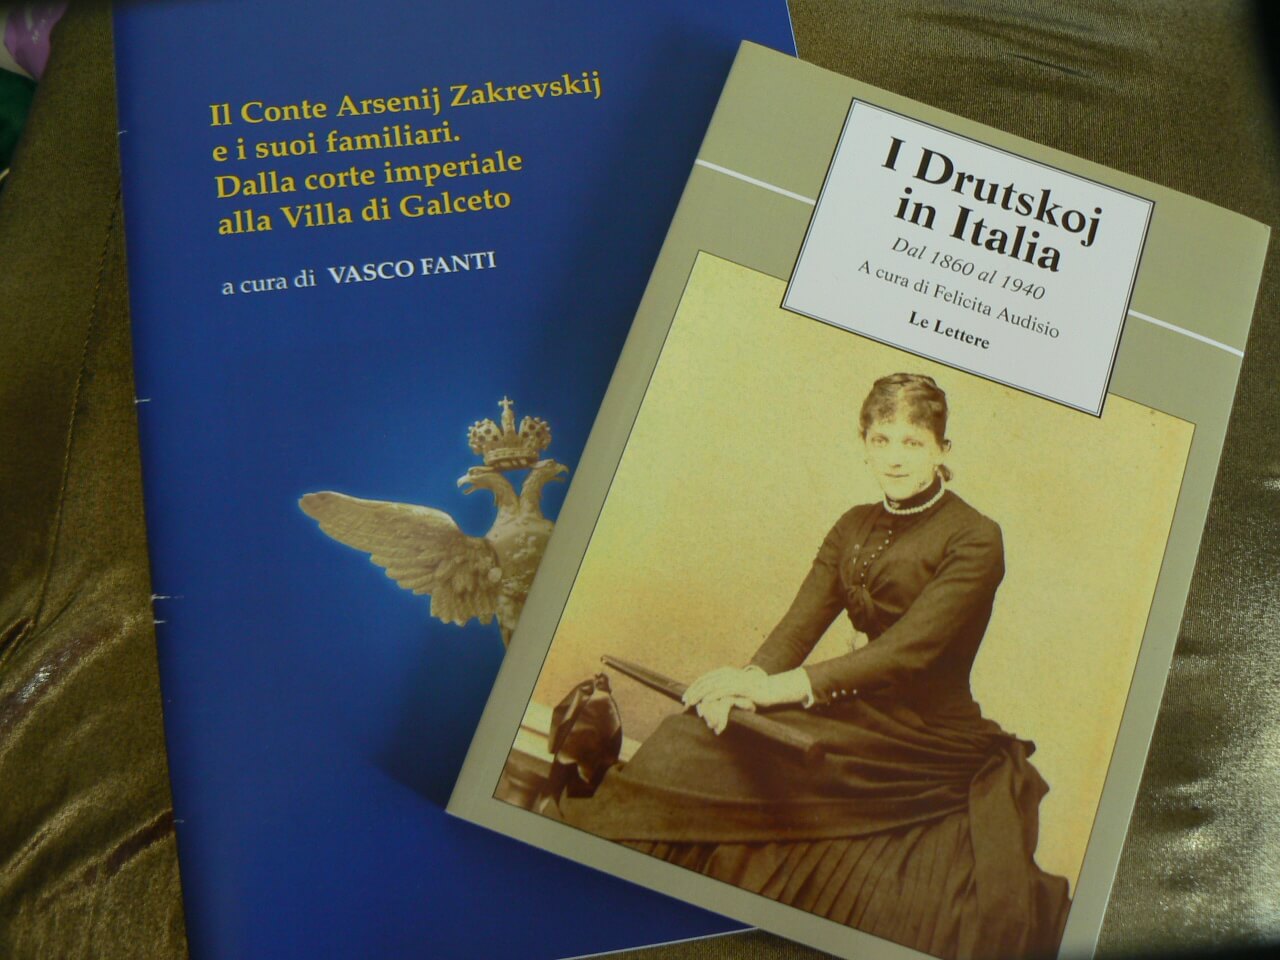 фото В Твери будет переведена и издана итальянская книга "I Drutskoj in Italia"